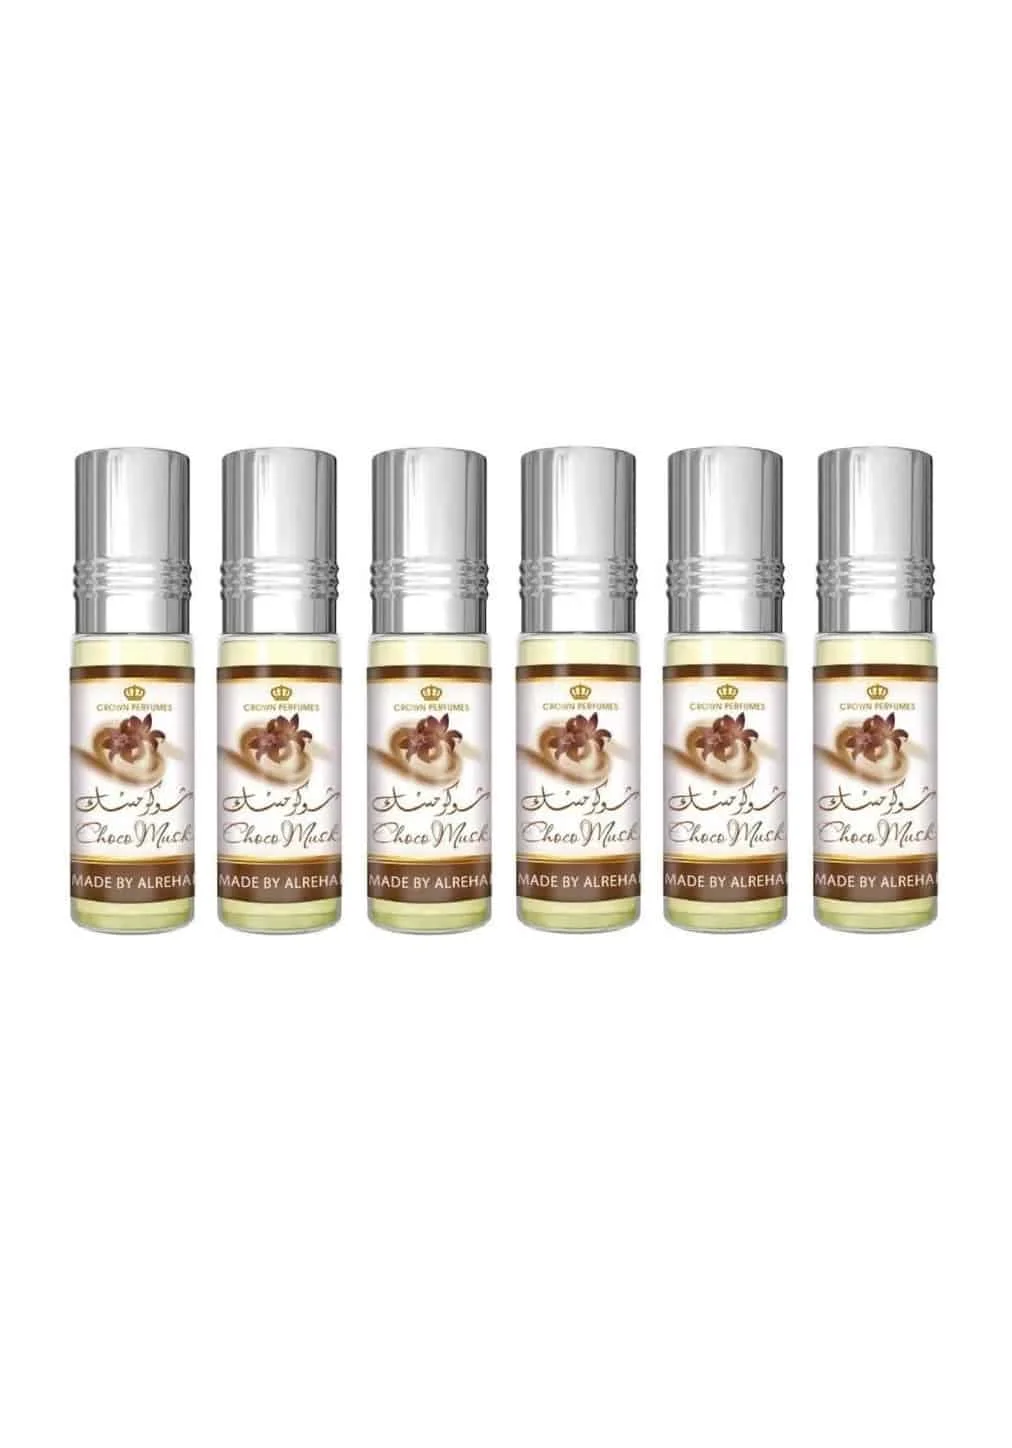 6ml Chocolate Musk Essential Oil Natural Concentrate Long Lasting Seductive  Eau de Toilette Eau de Toilette Perfume for Women Gi - AliExpress